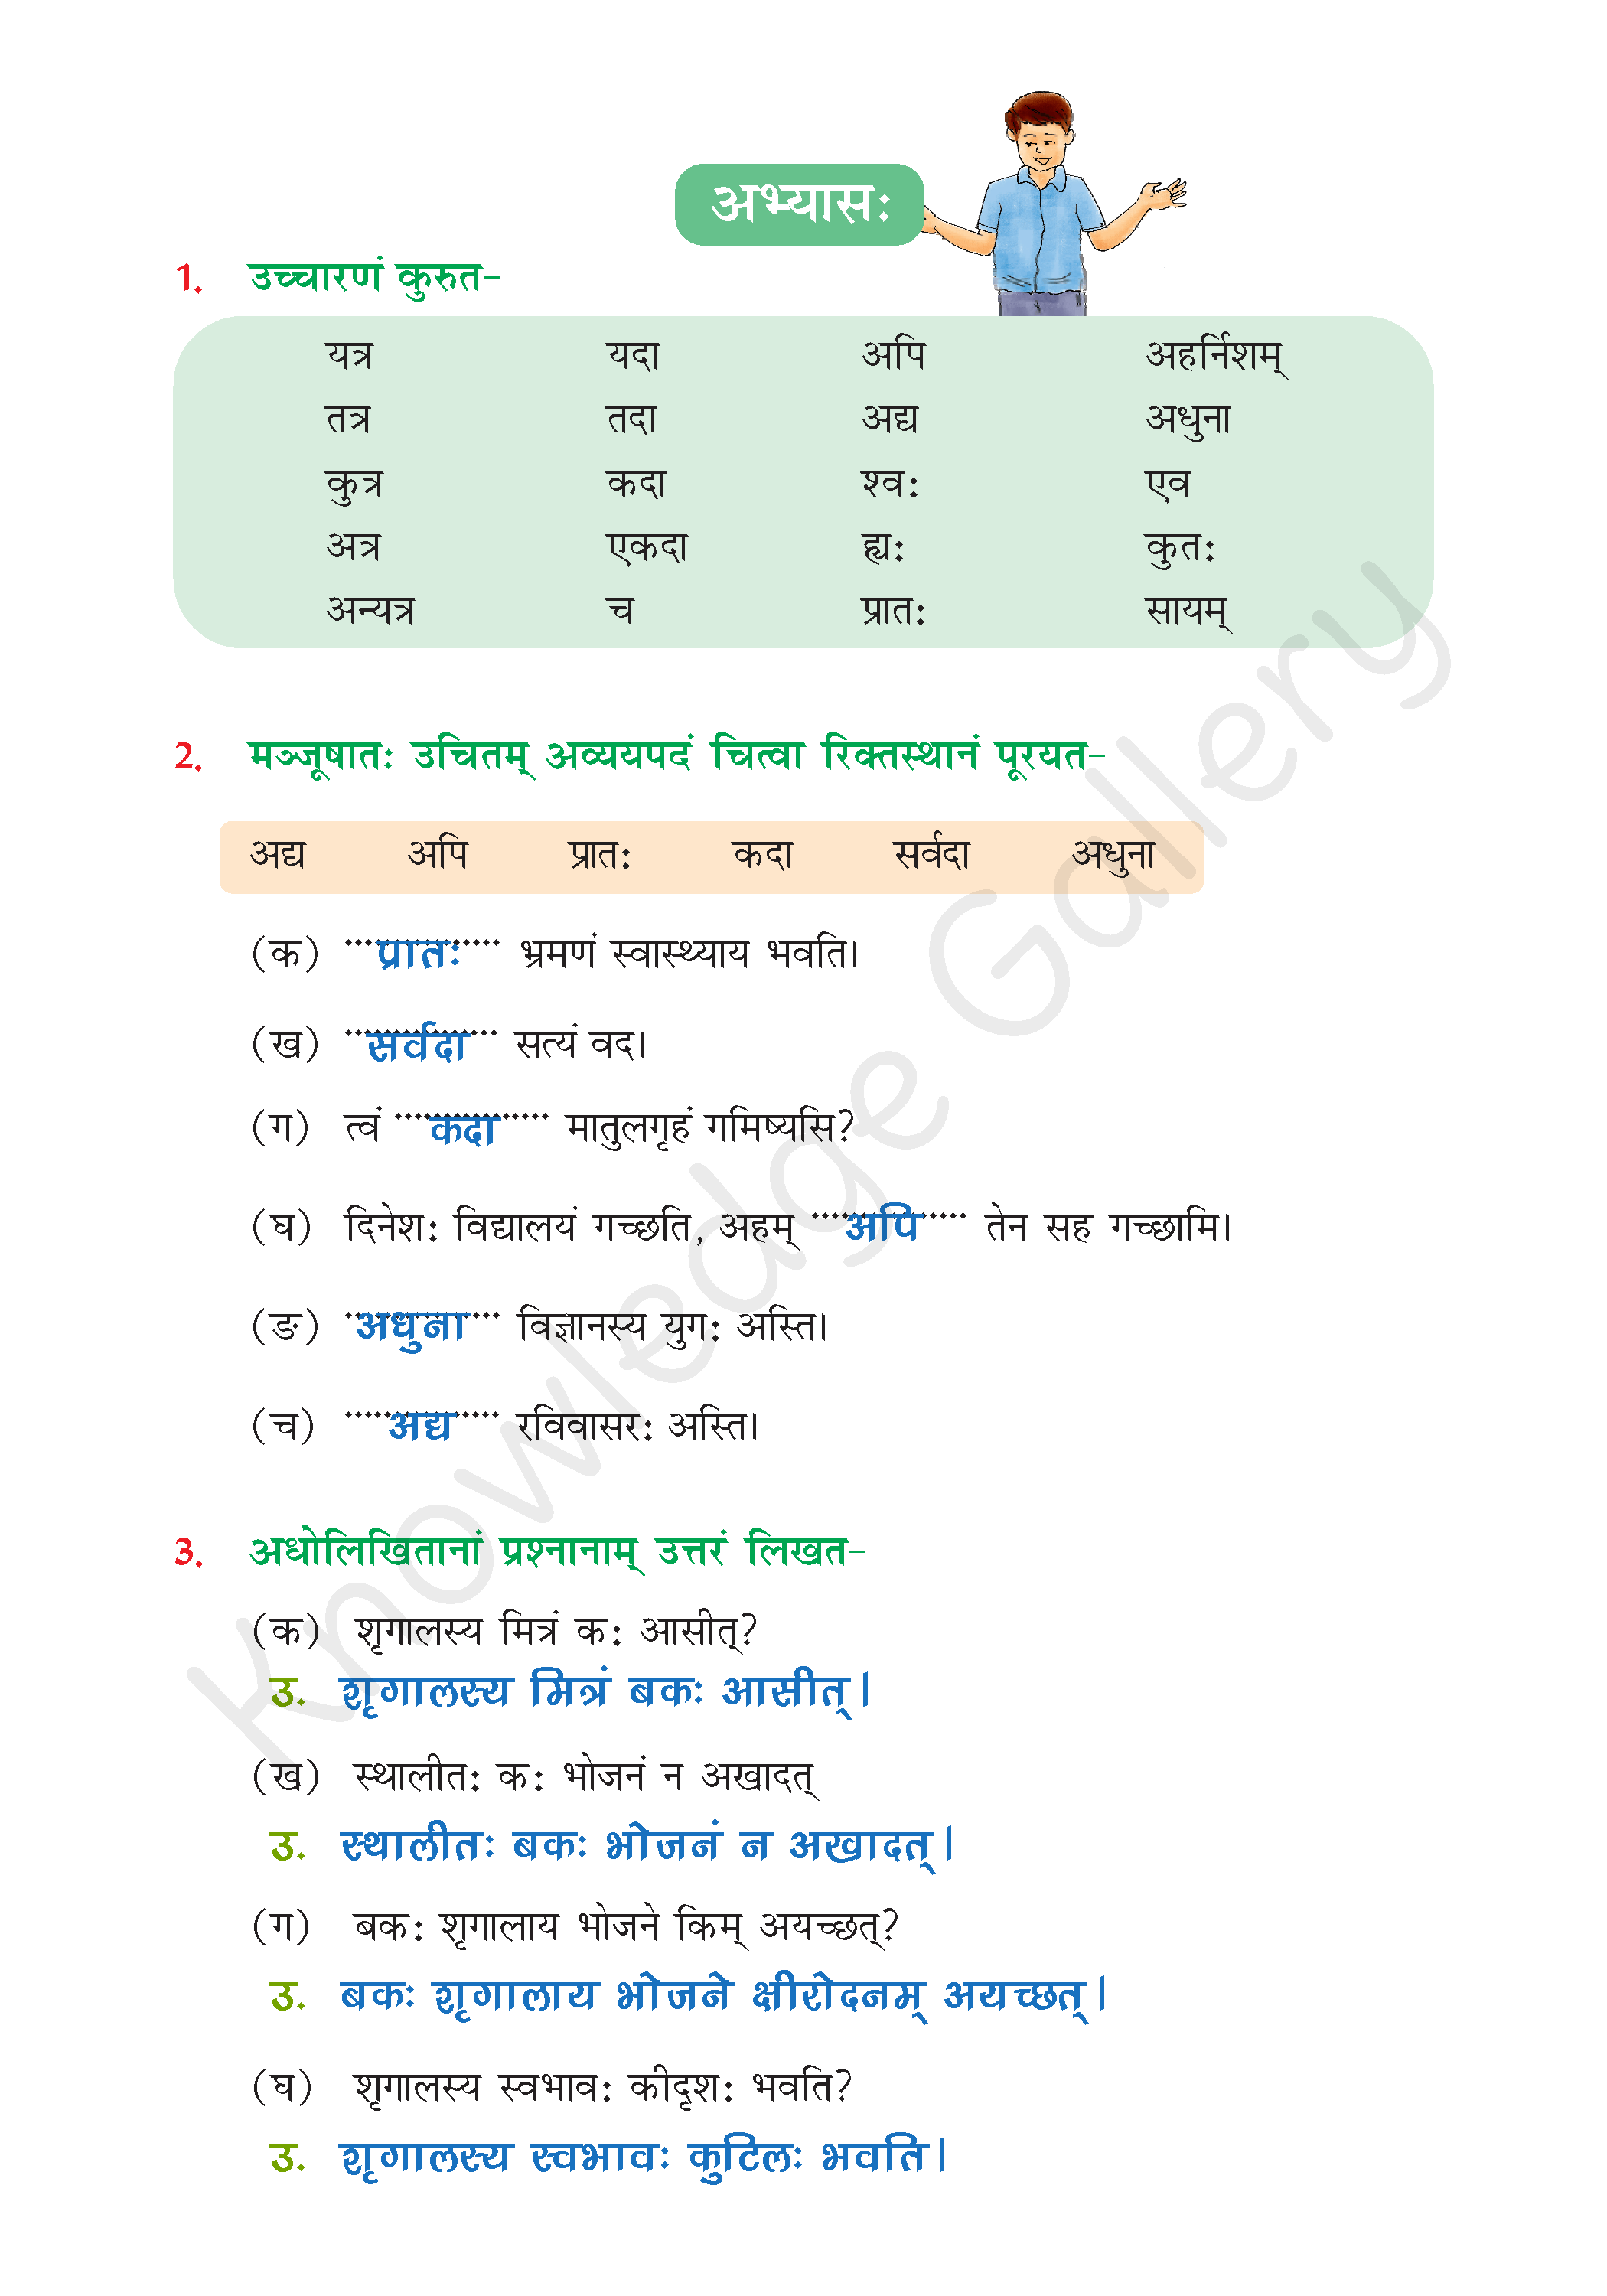 NCERT Solution For Class 6 Sanskrit Chapter 7 part 4